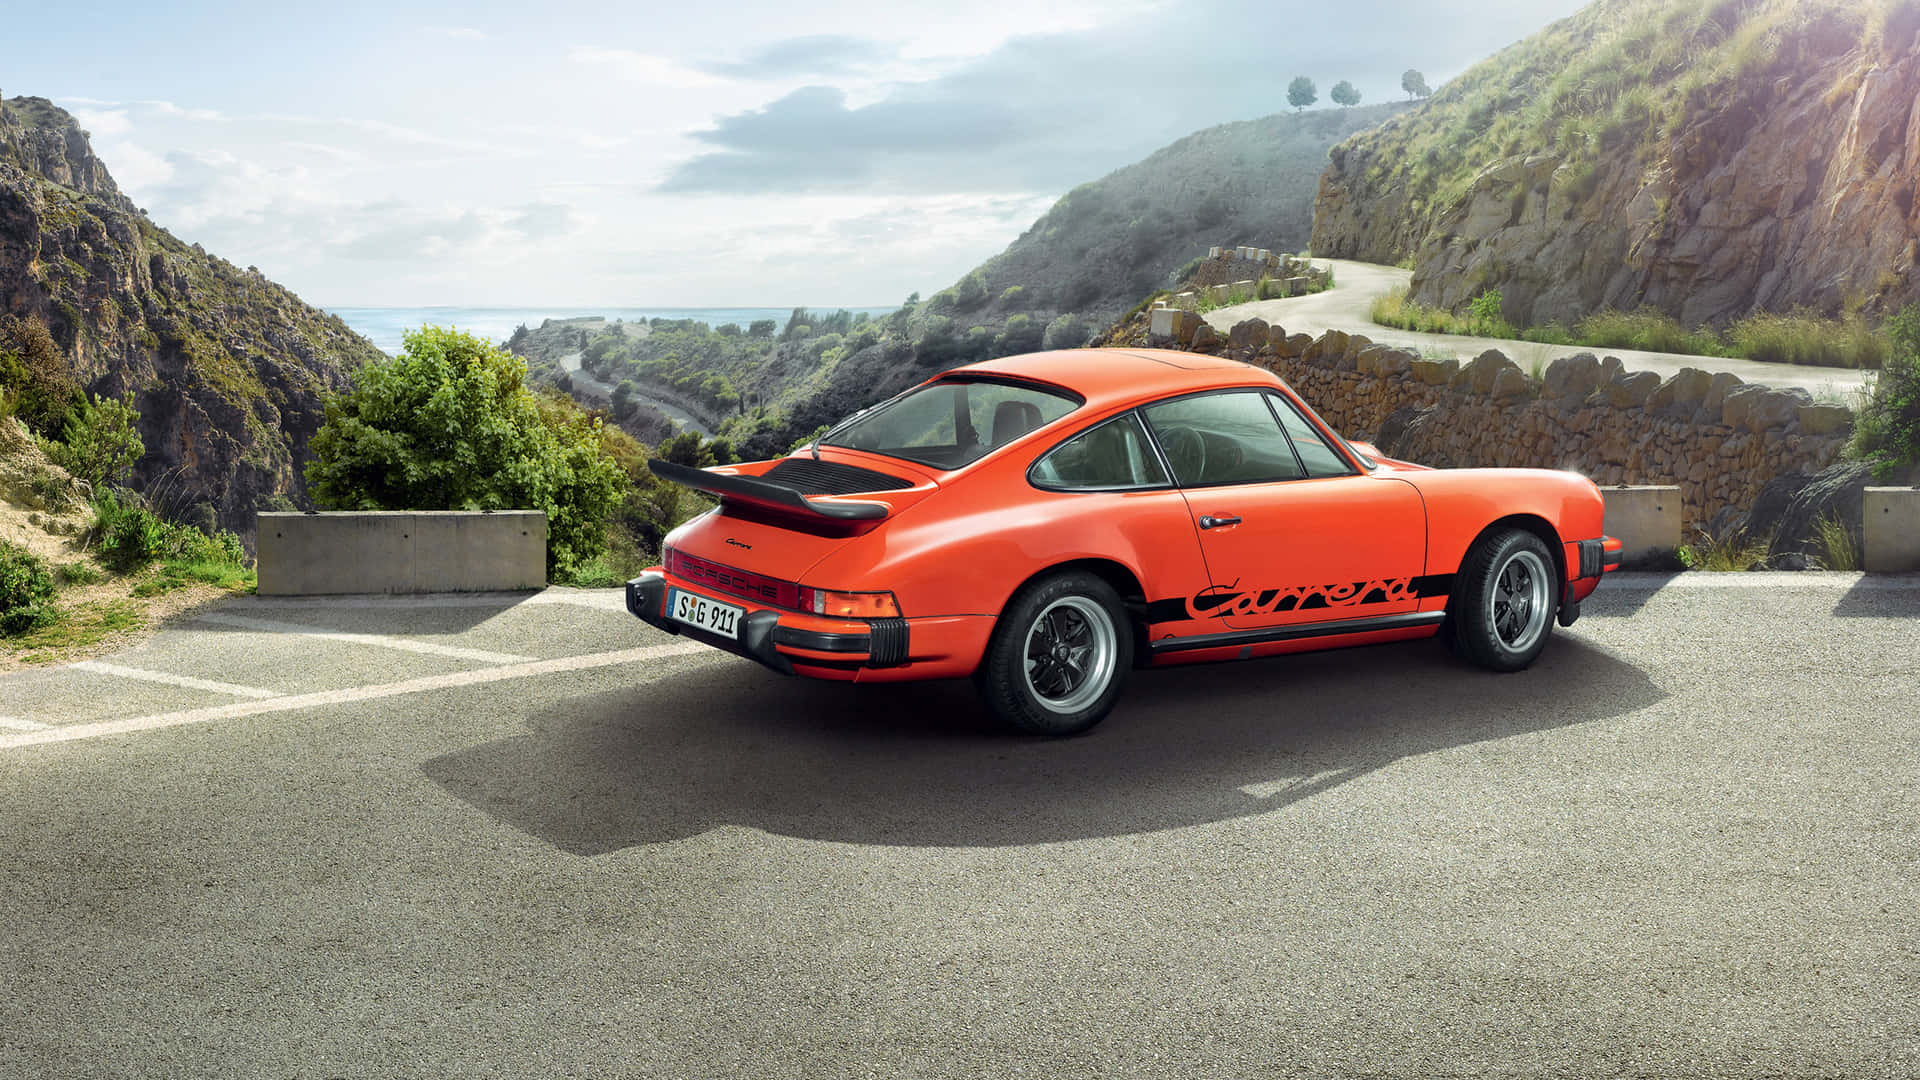 Explore The Beauty Of A 4k Ultra Hd Porsche